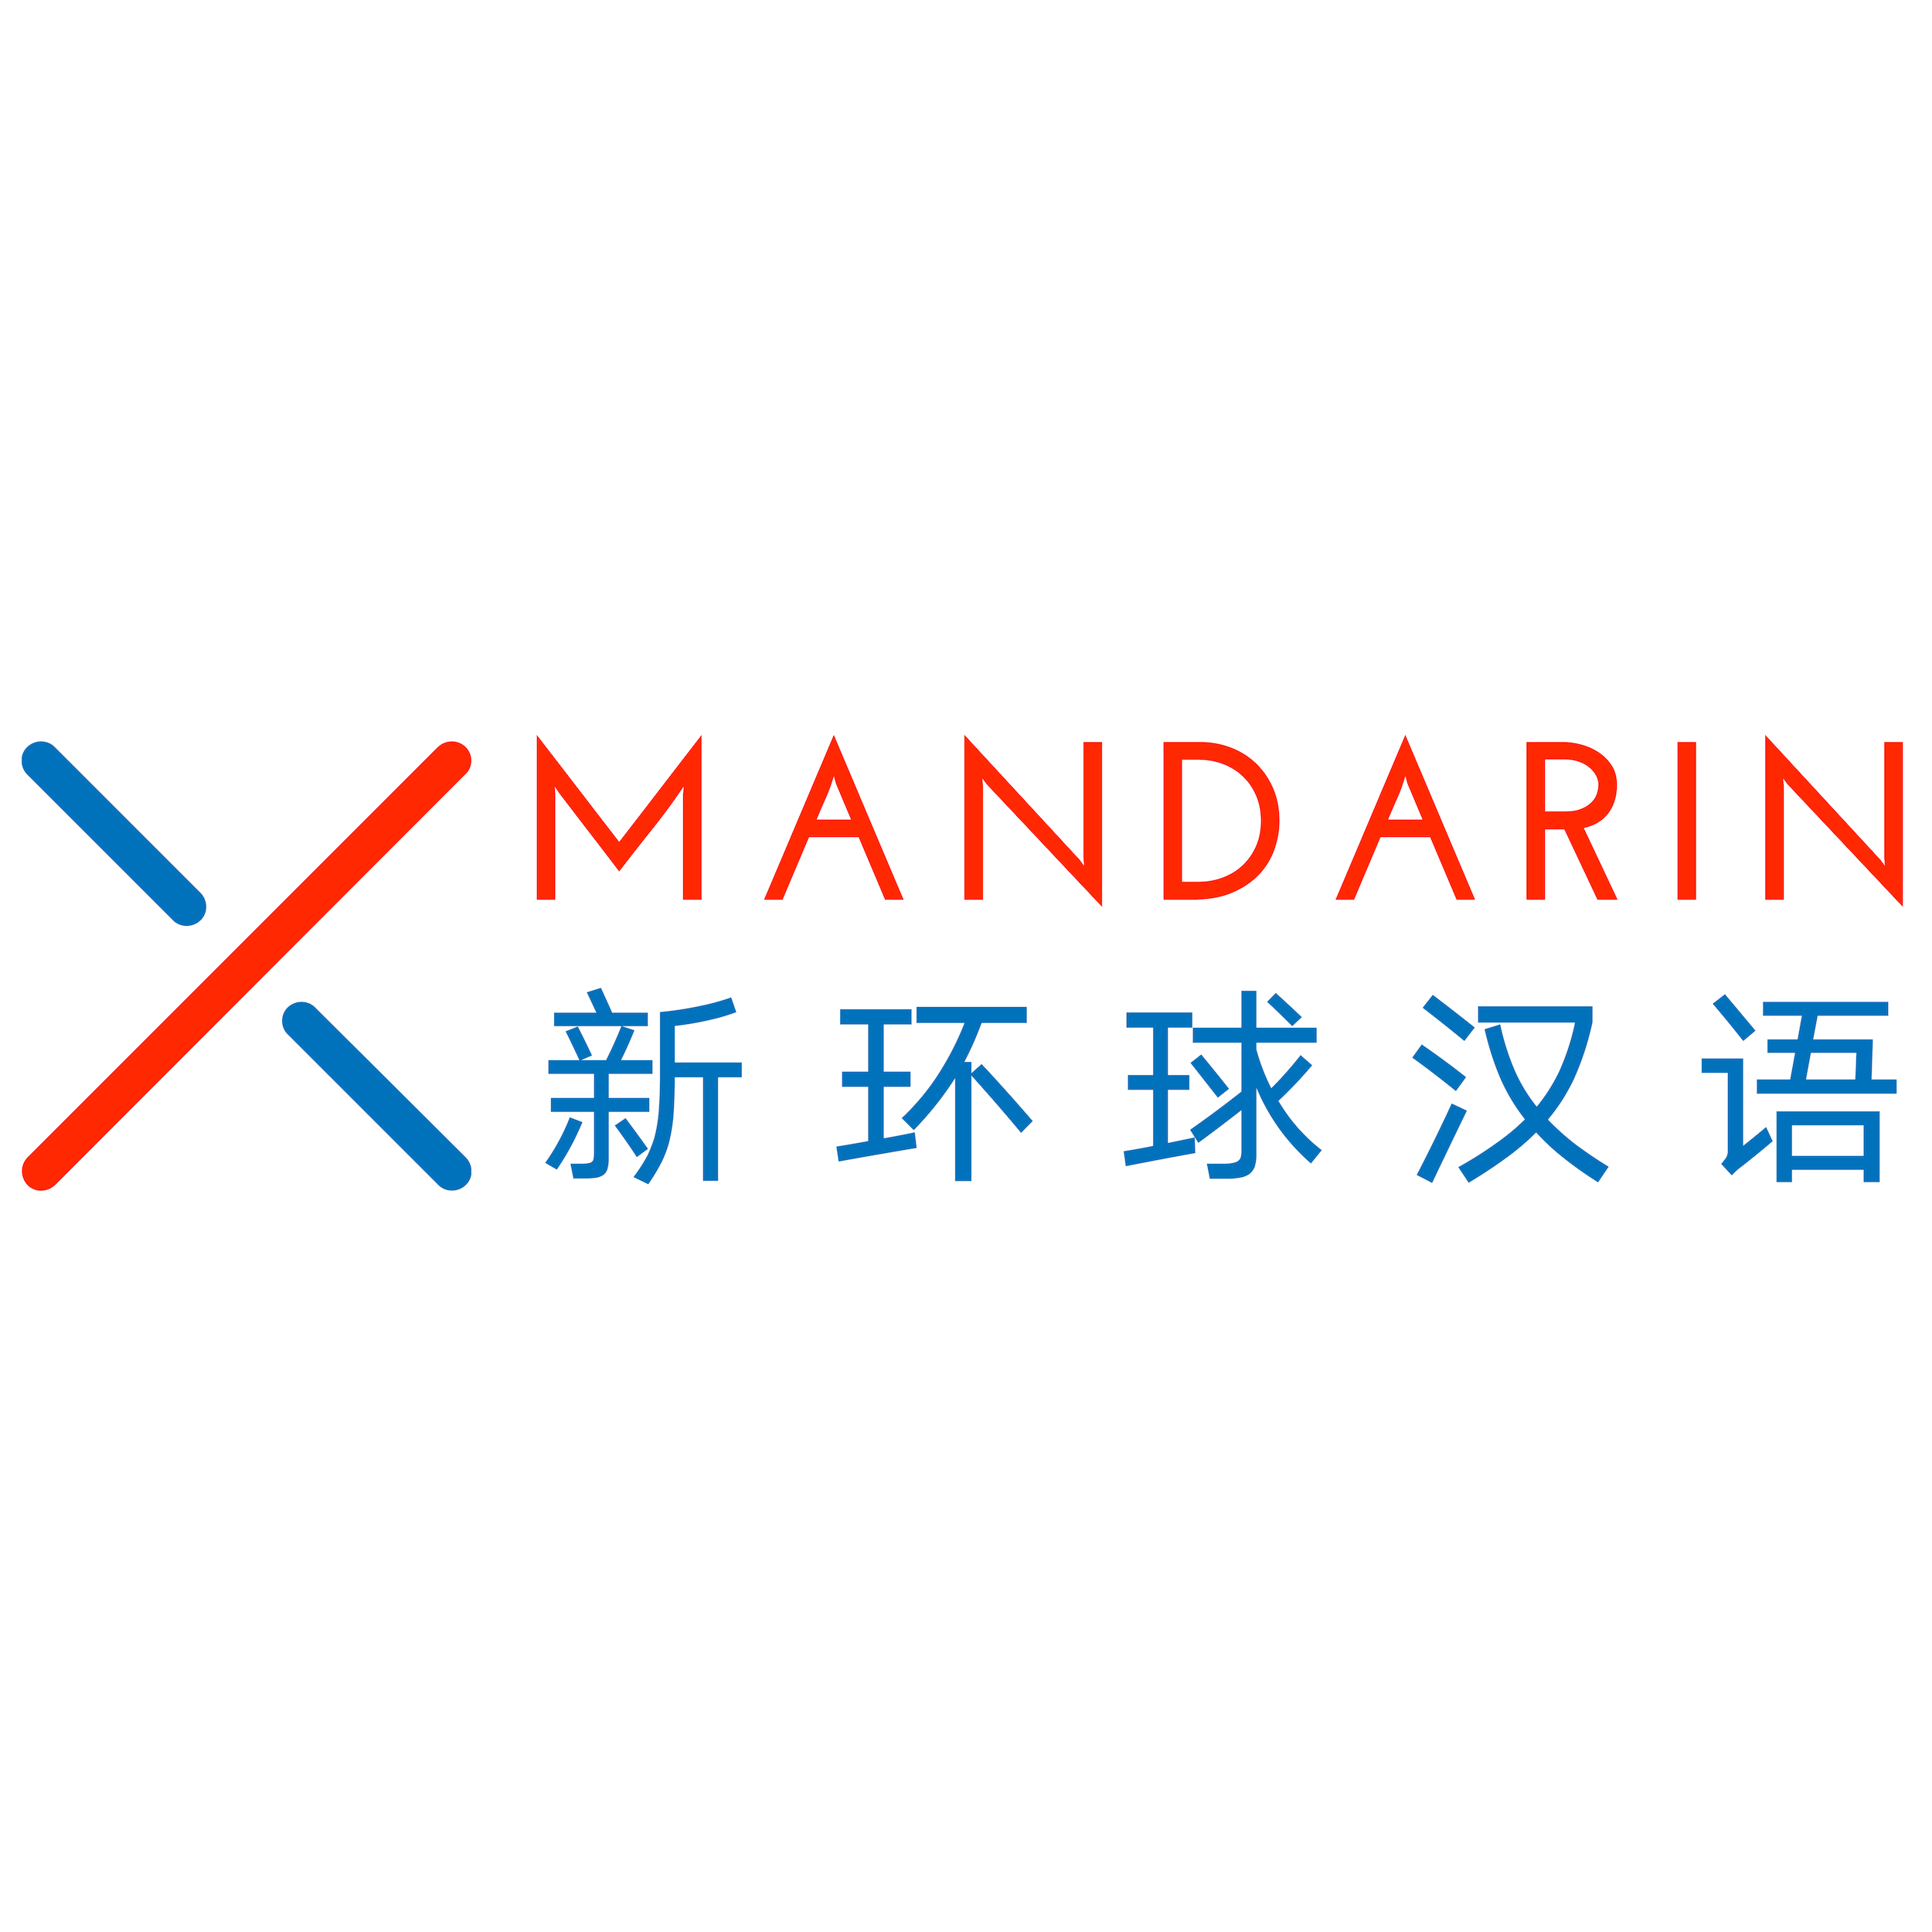  XMandarin-Logo